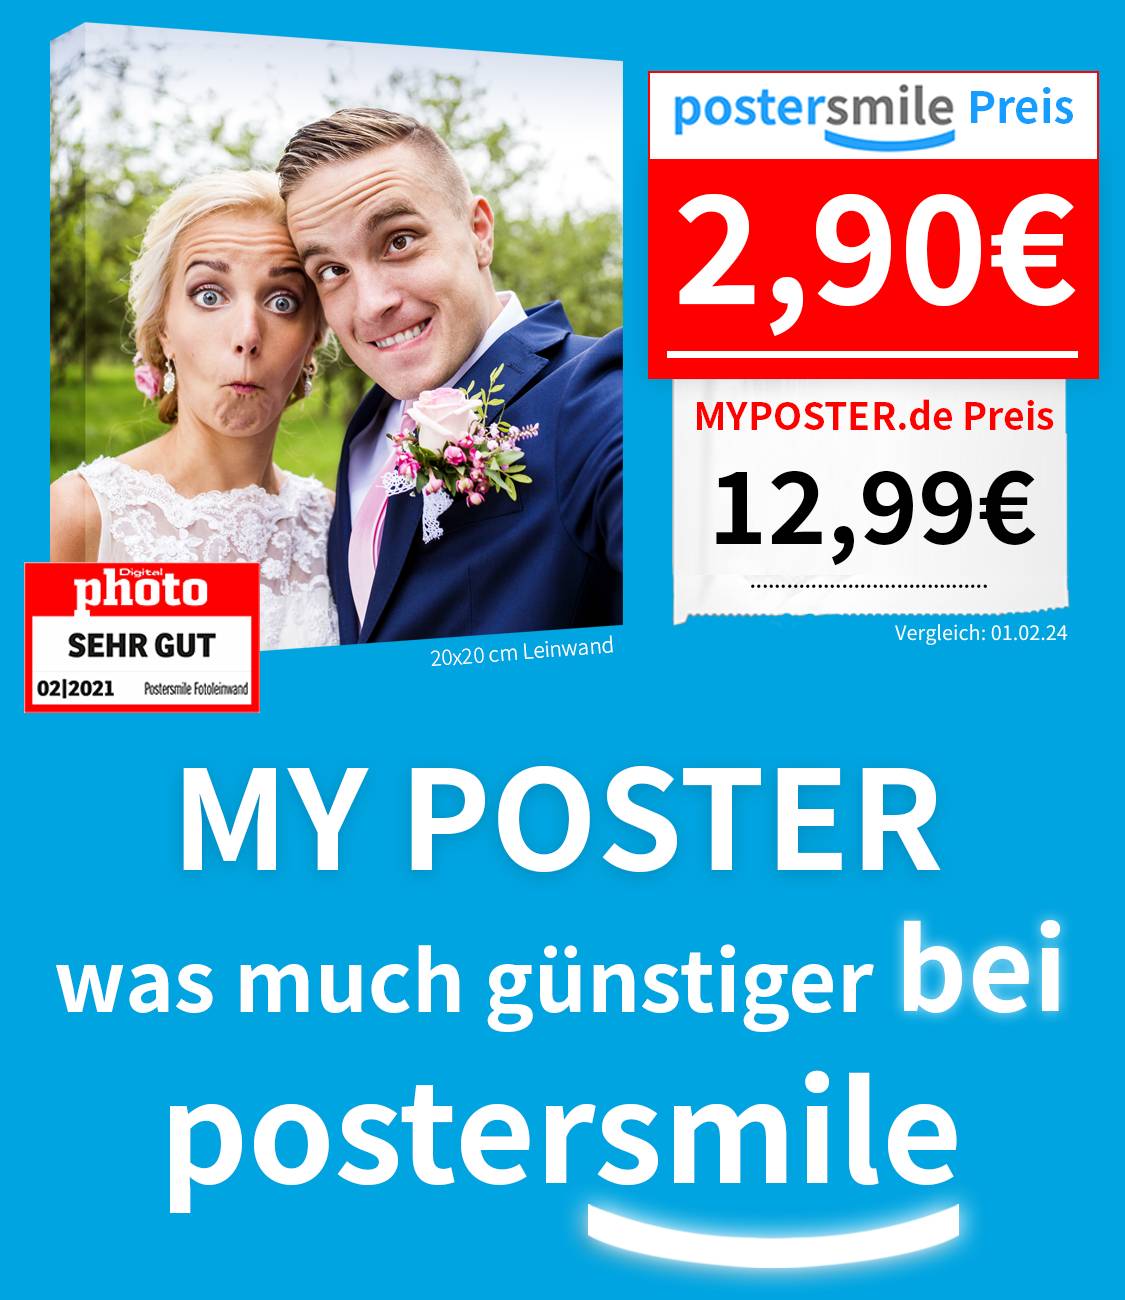 Fotoleinwand günstig - Foto auf Leinwand Preisvergleich postersmile.de vs. myposter.de